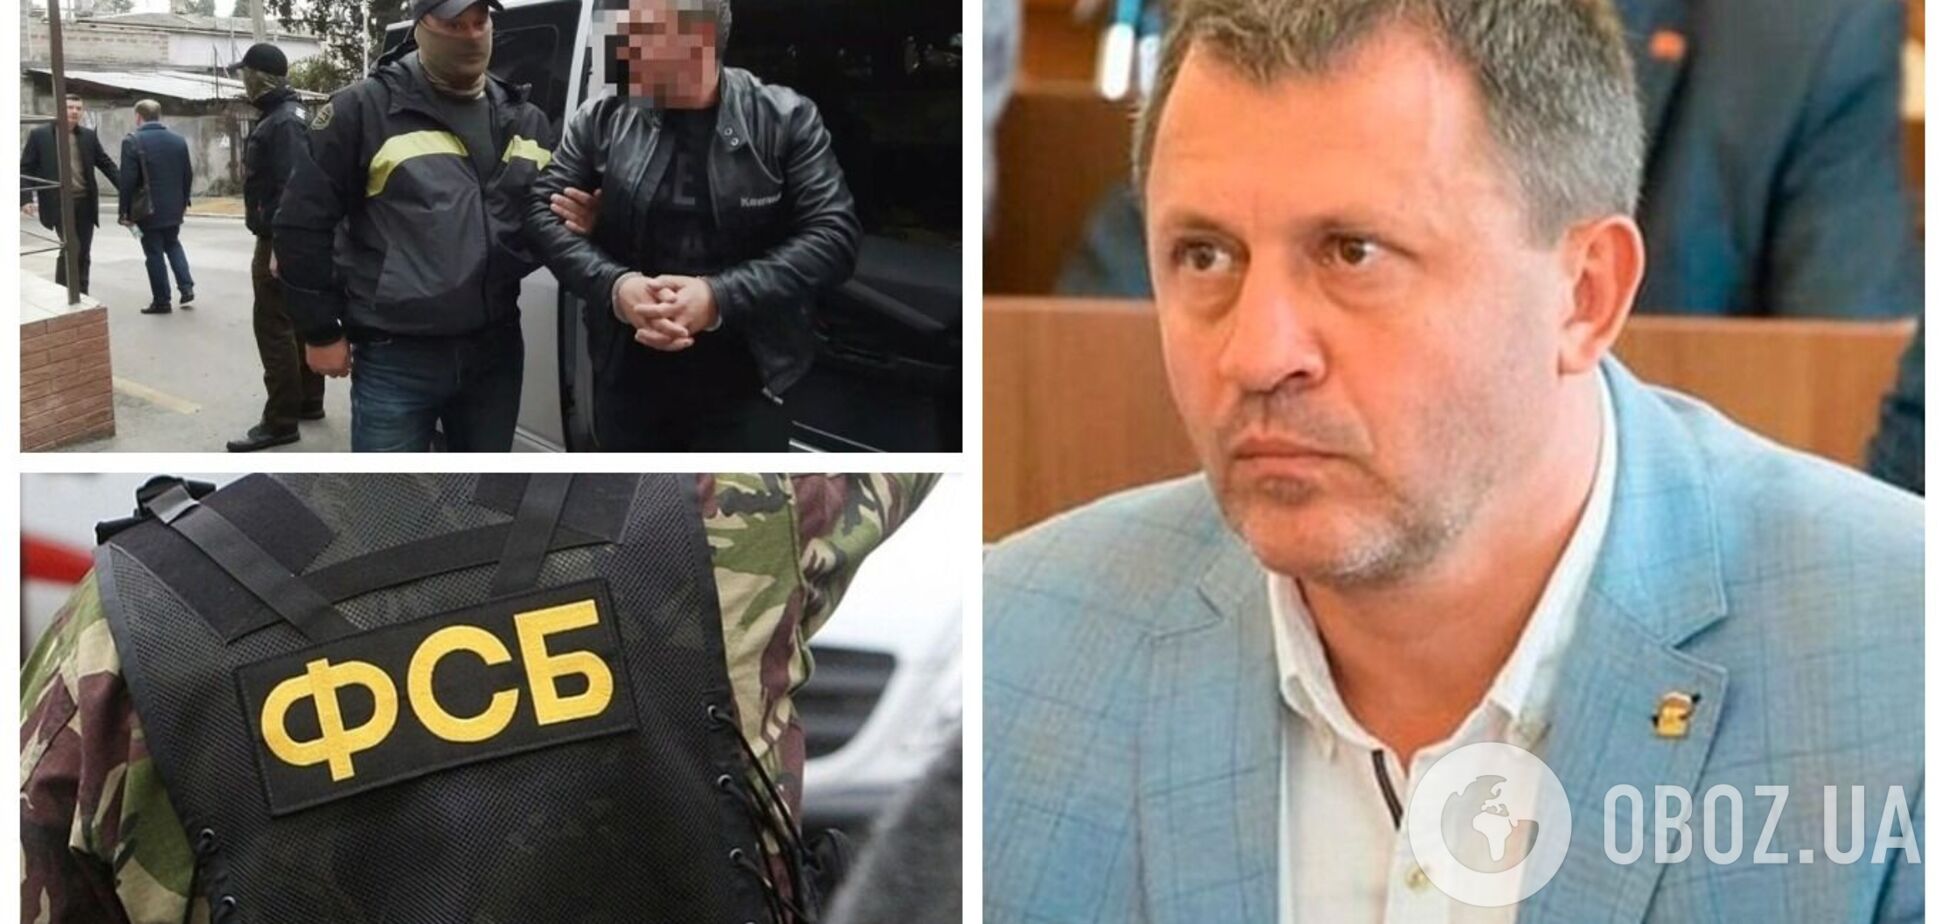 Оккупанты задержали экс-'депутата' Ялтинского горсовета, его обвинили в шпионаже в пользу Украины. Фото